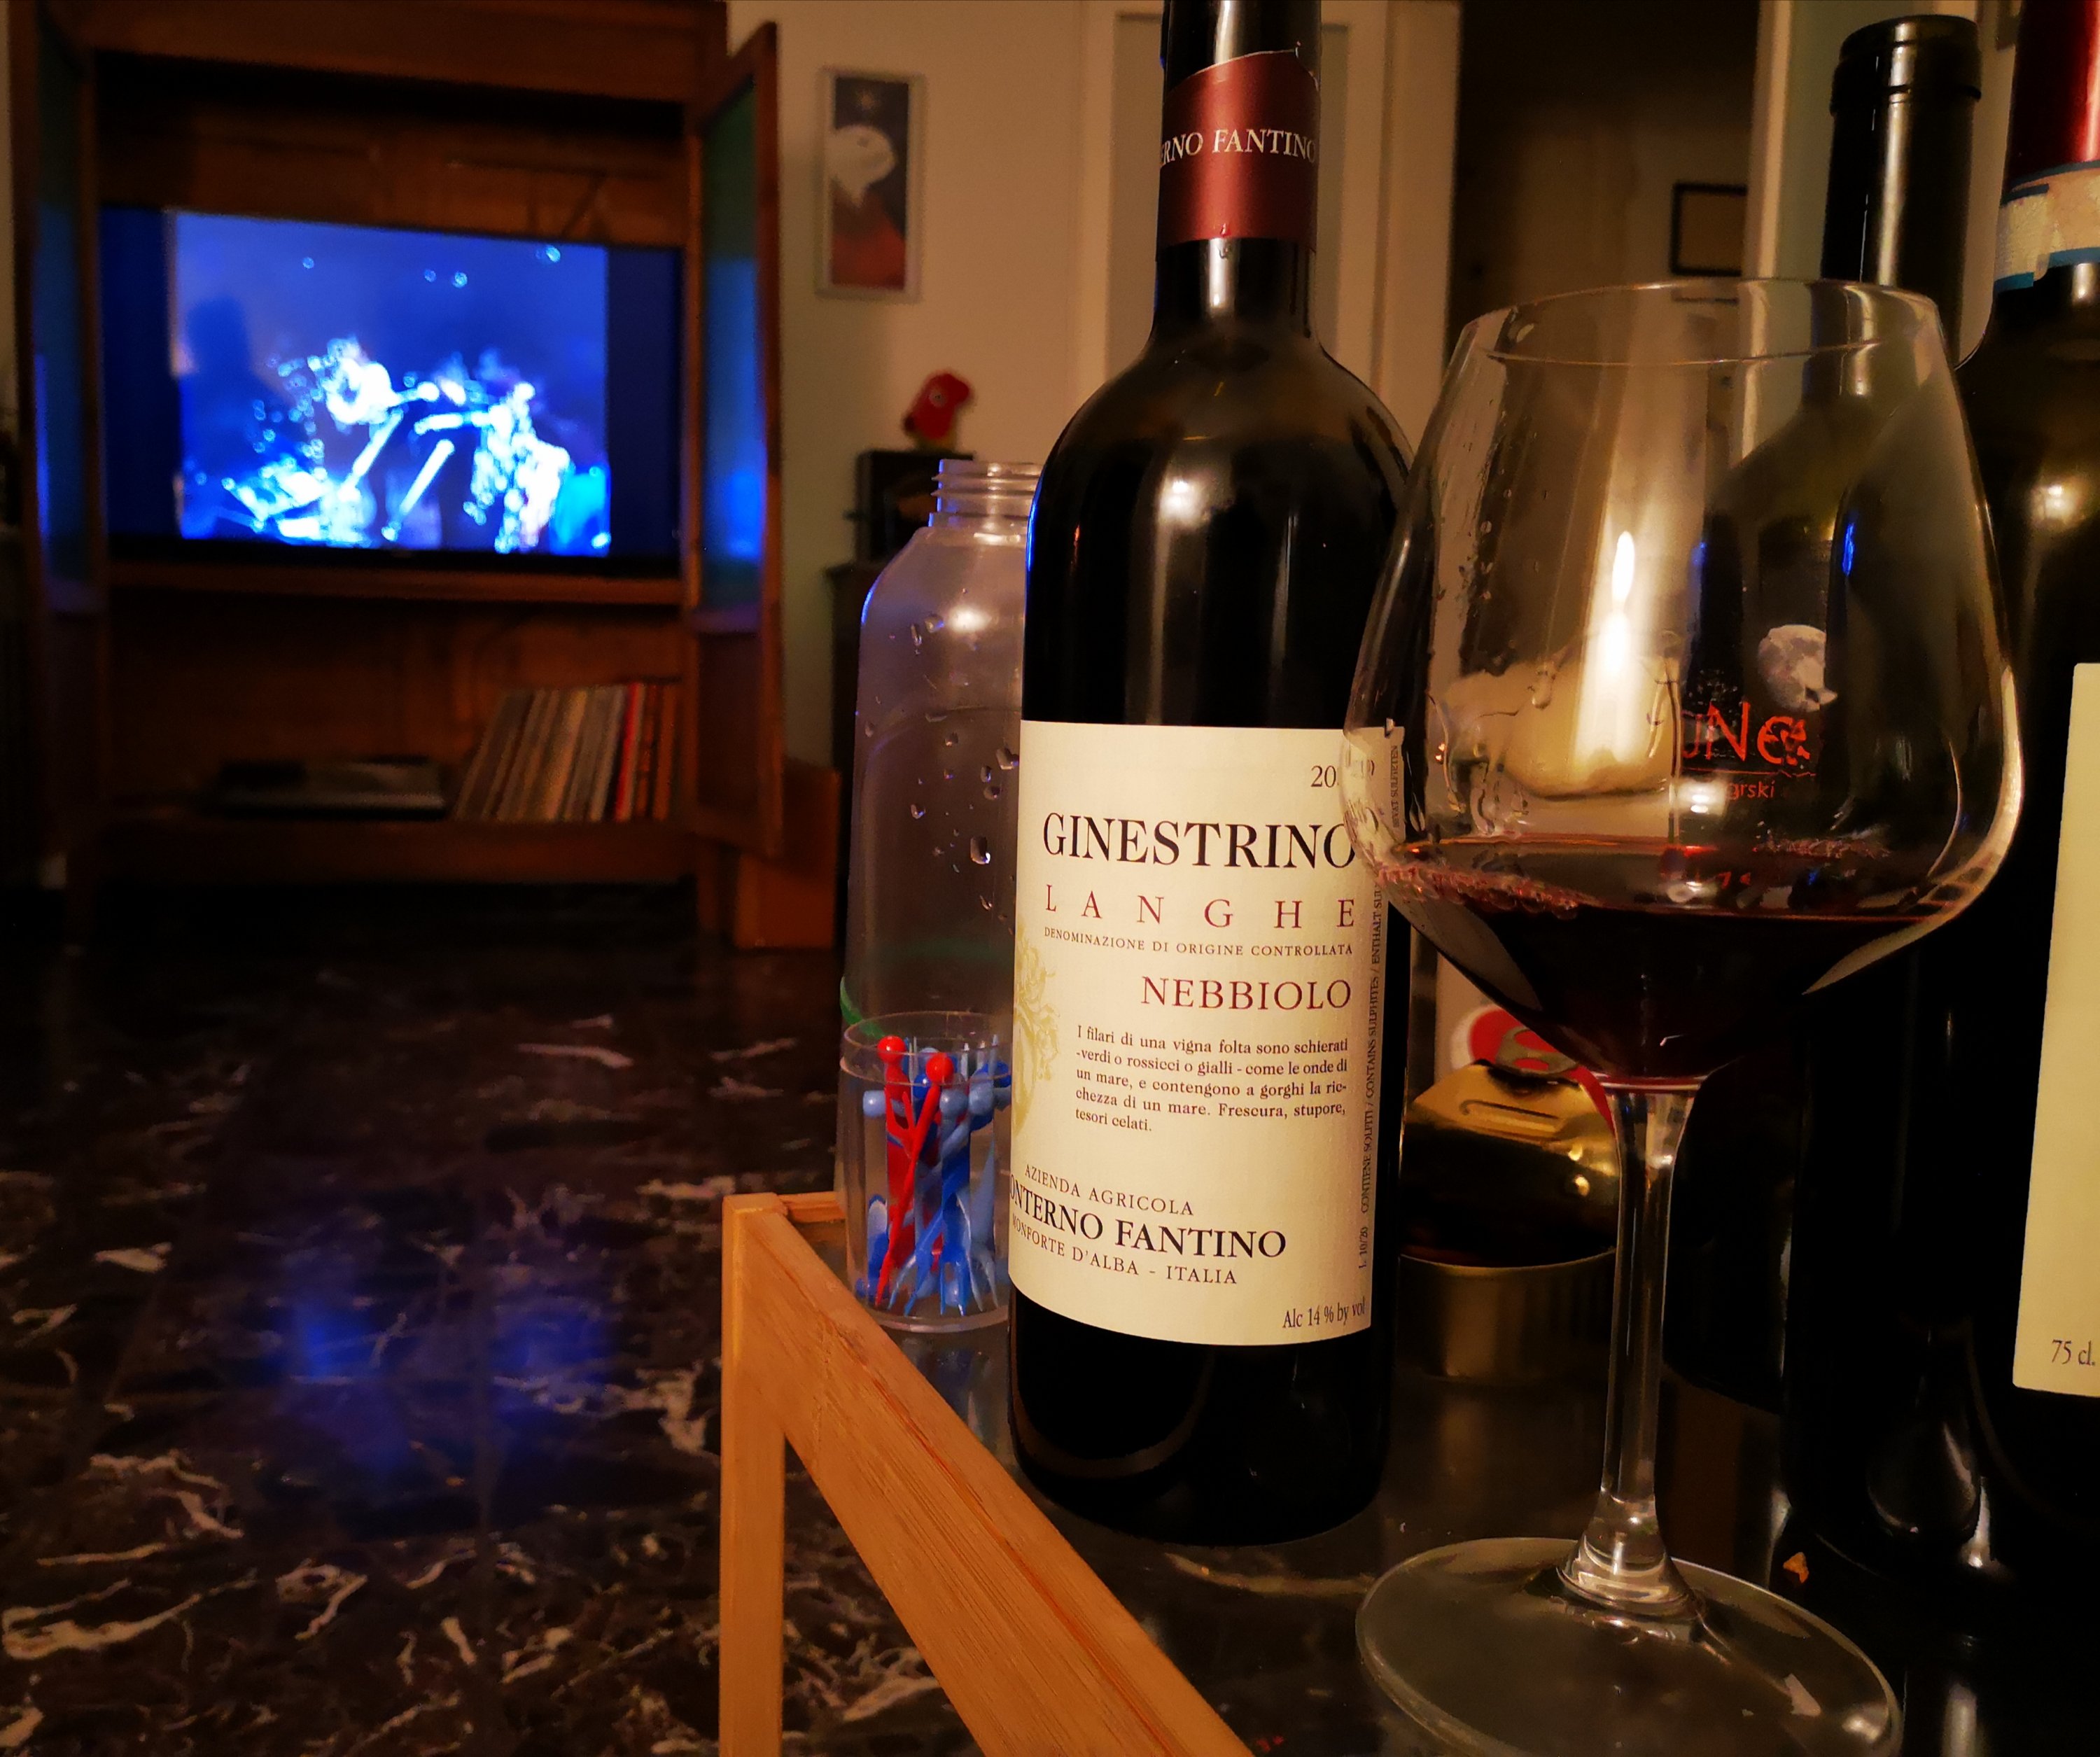 Enonauta/Degustazione di Vino #136-139 - review - Malvasia Zahar/Bezga Milic/Dolcetto d'Alba Roddolo/Nebbiolo Ginestrino 19 Conterno Fantino